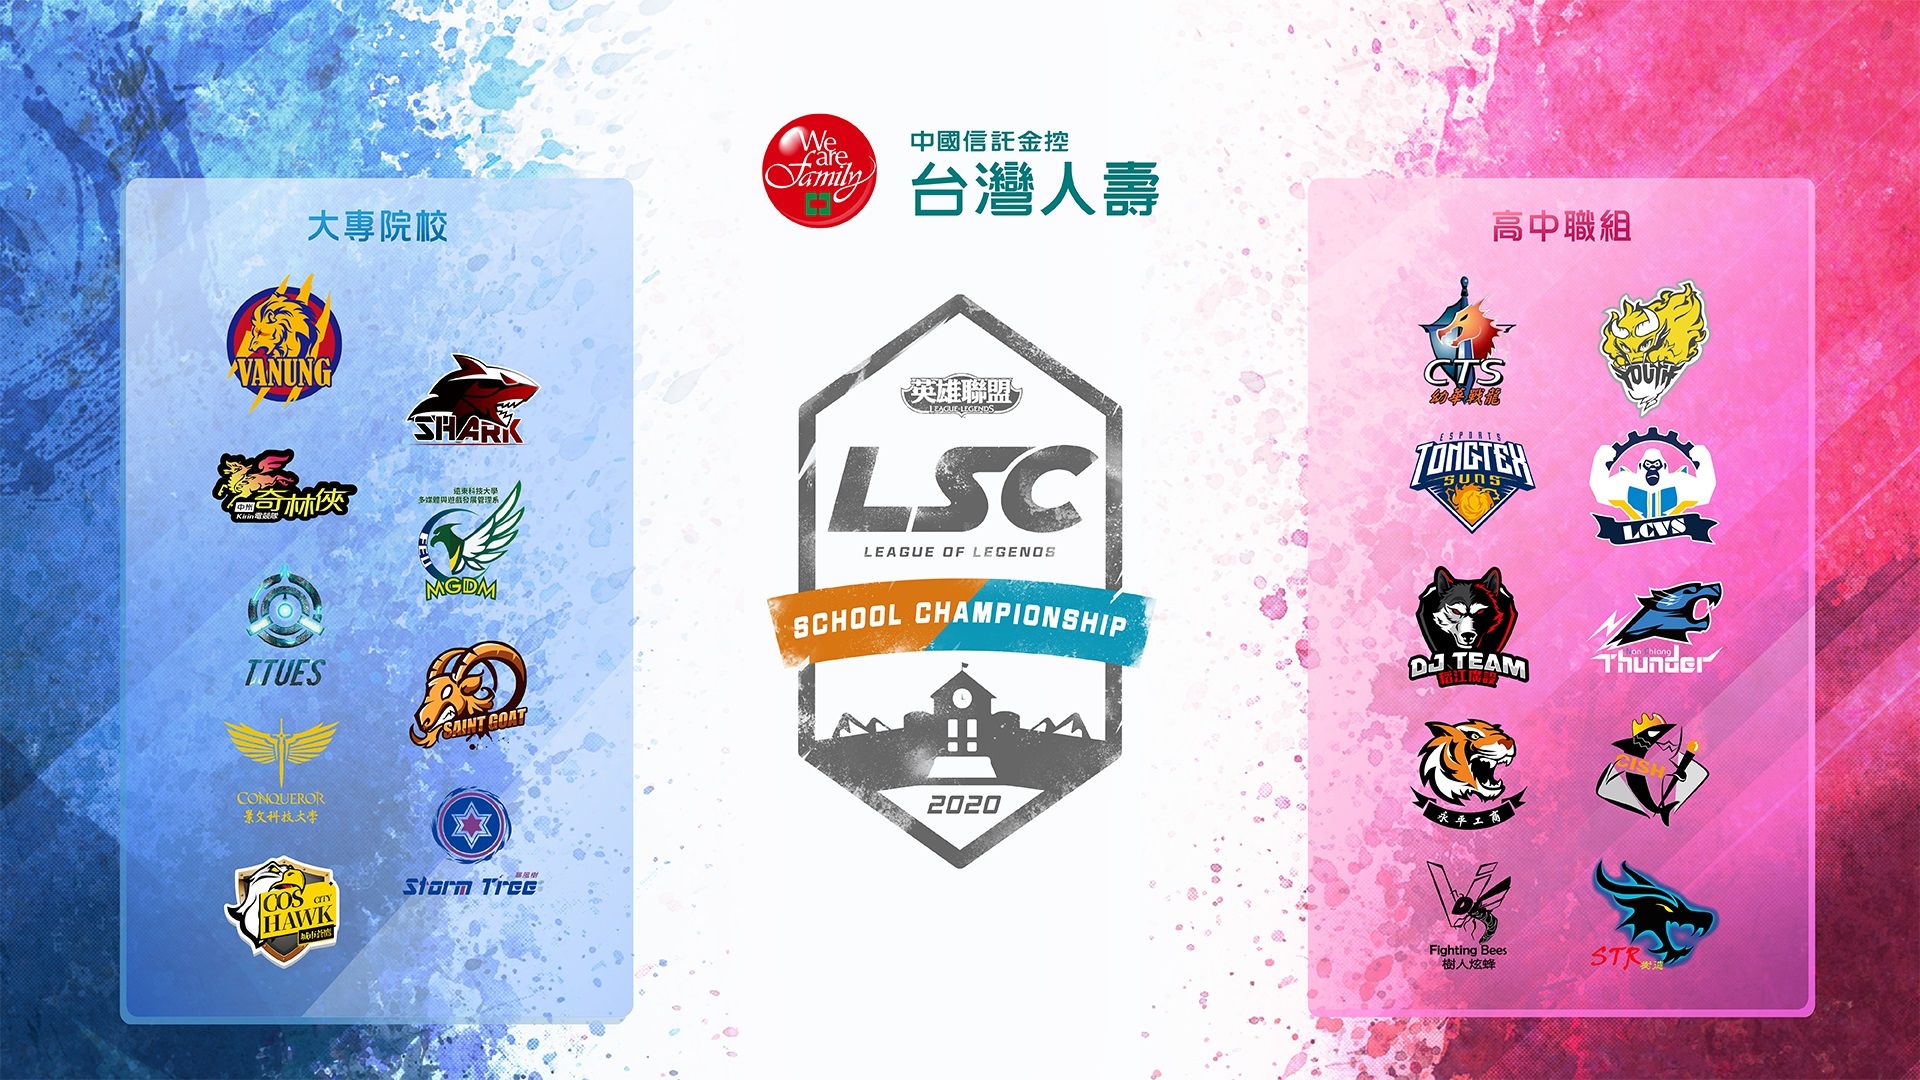 《英雄联盟》LSC 第三届校园联赛 6 月 8 日开赛 开幕战